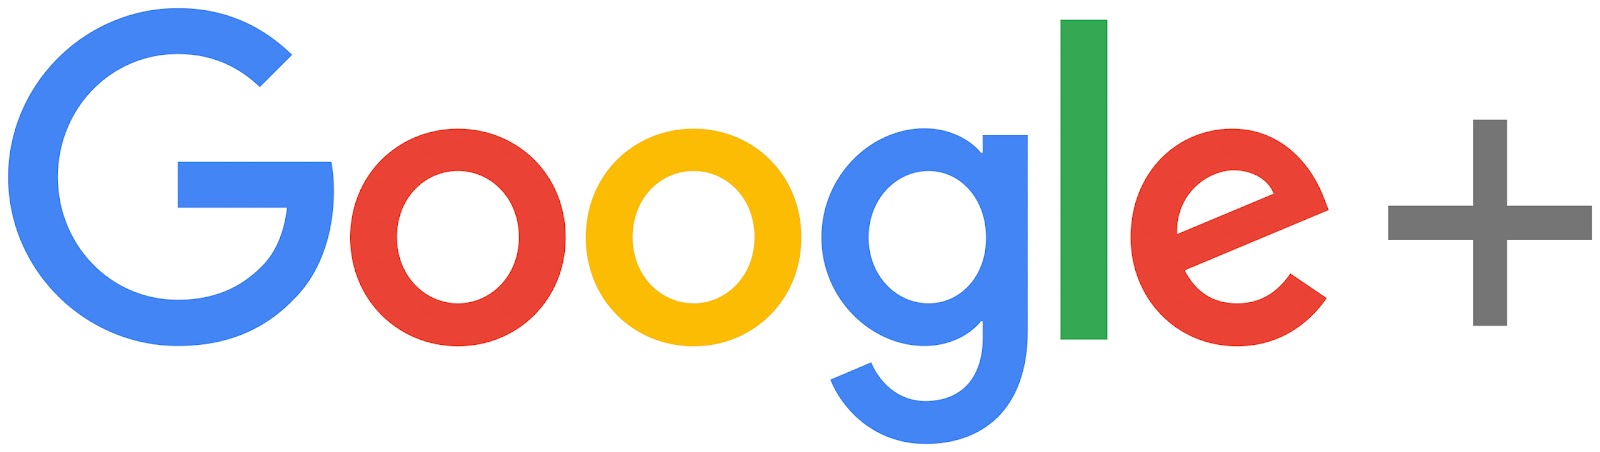 Google+のロゴマーク